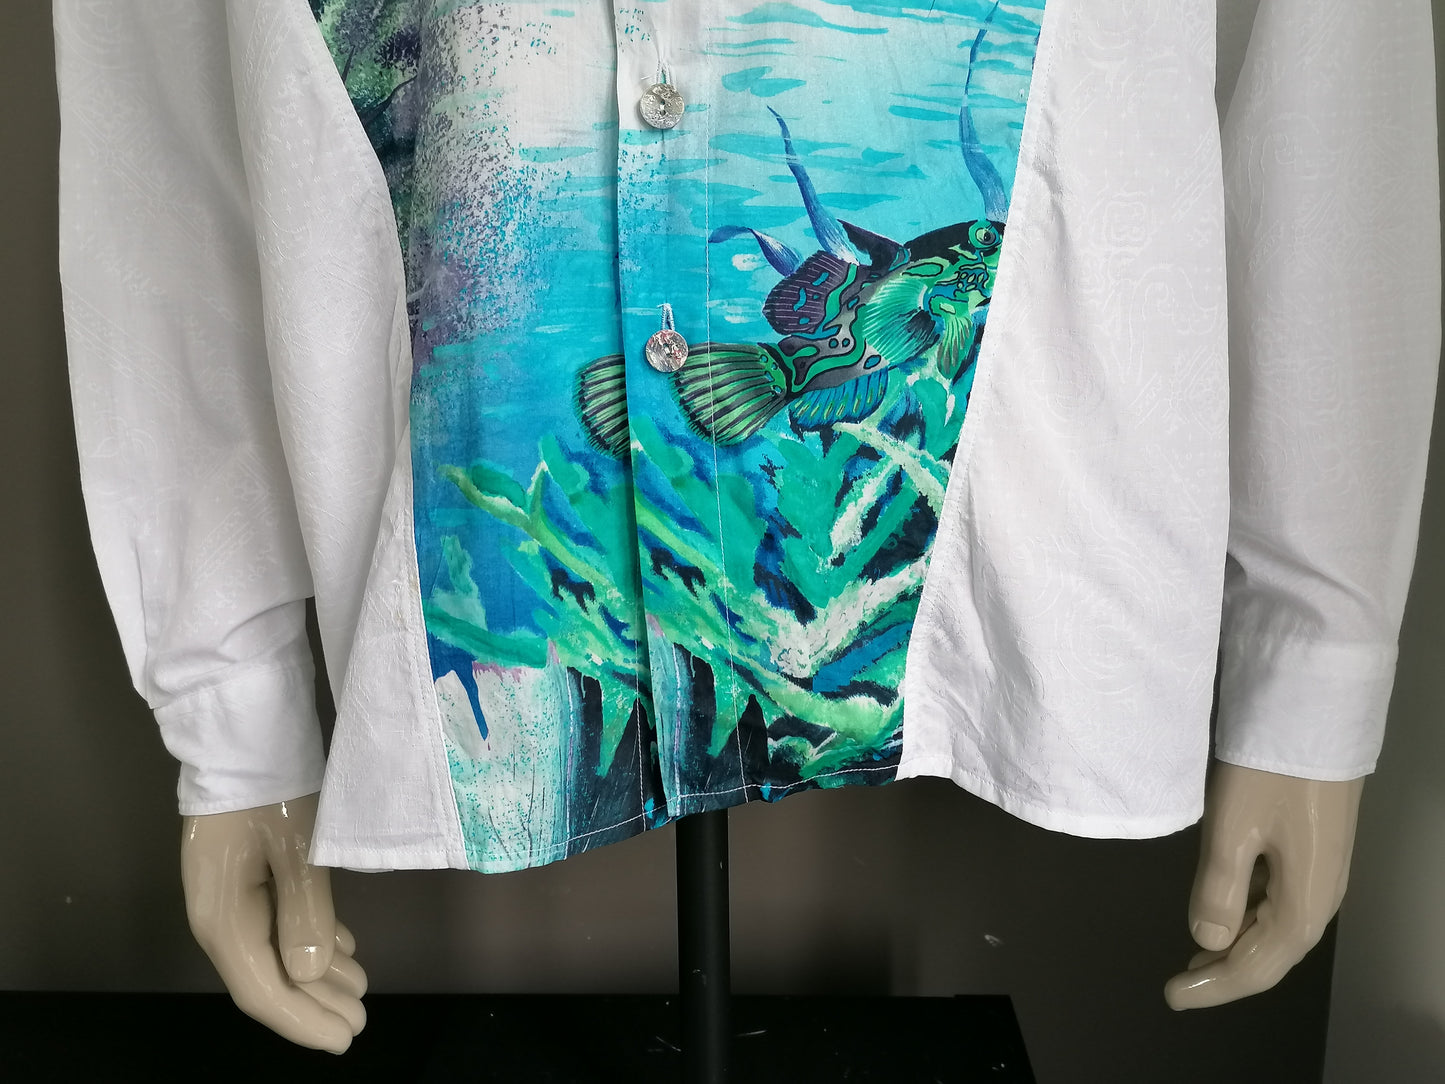 Nueva línea de la camisa de la vendimia. Blanco con una impresión de sub-mar. Tamaño XL.